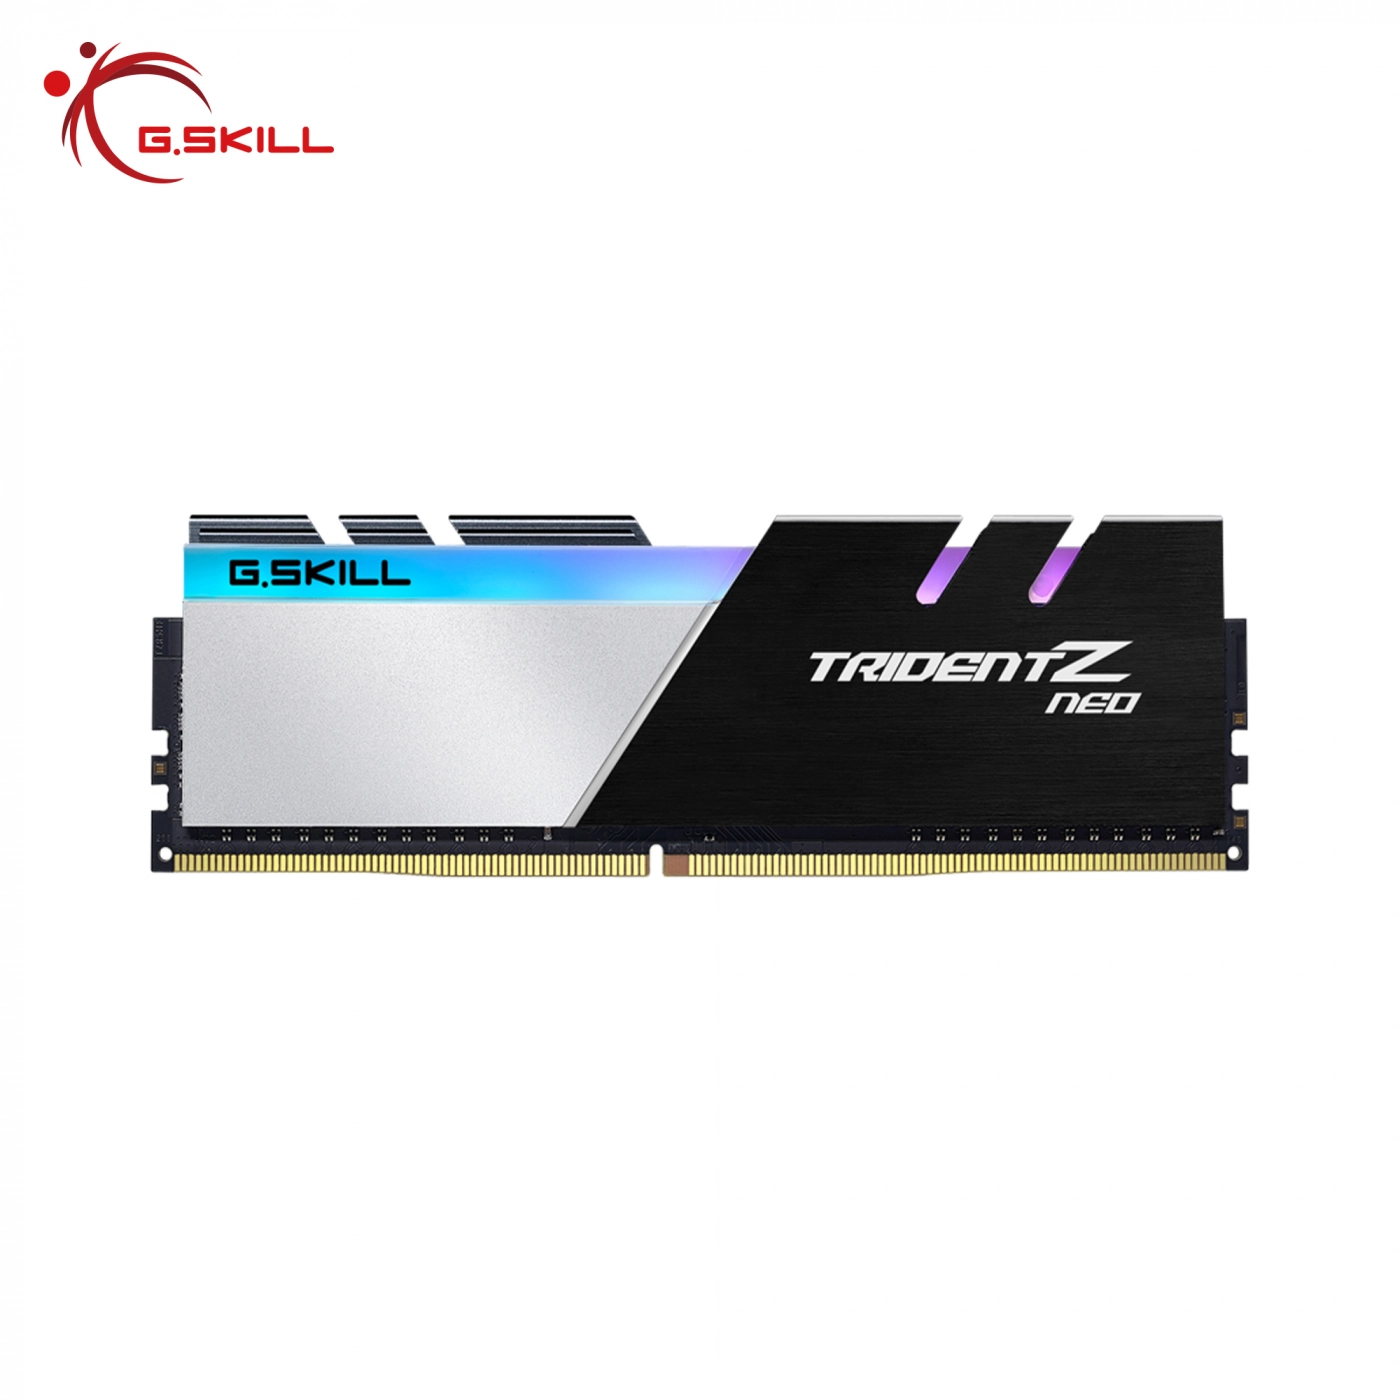 Купить Модуль памяти G.Skill Trident Z Neo DDR4-3600 CL16-16-16-36 1.35V 32GB (2x16GB) - фото 3